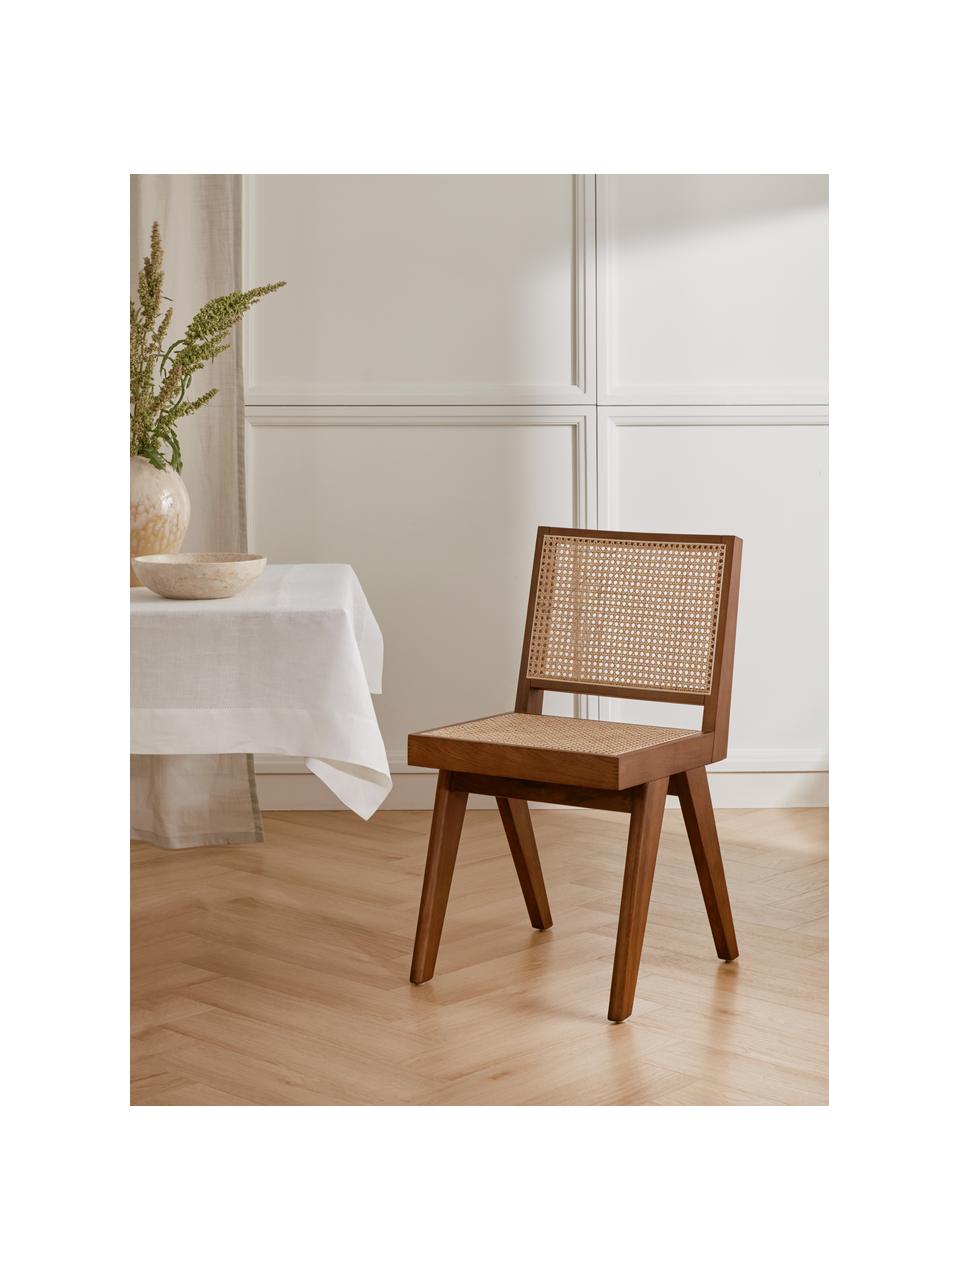 Dřevěná židle s vídeňskou pleteninou Sissi, Ratan, tmavé dubové dřevo, Š 46 cm, H 56 cm